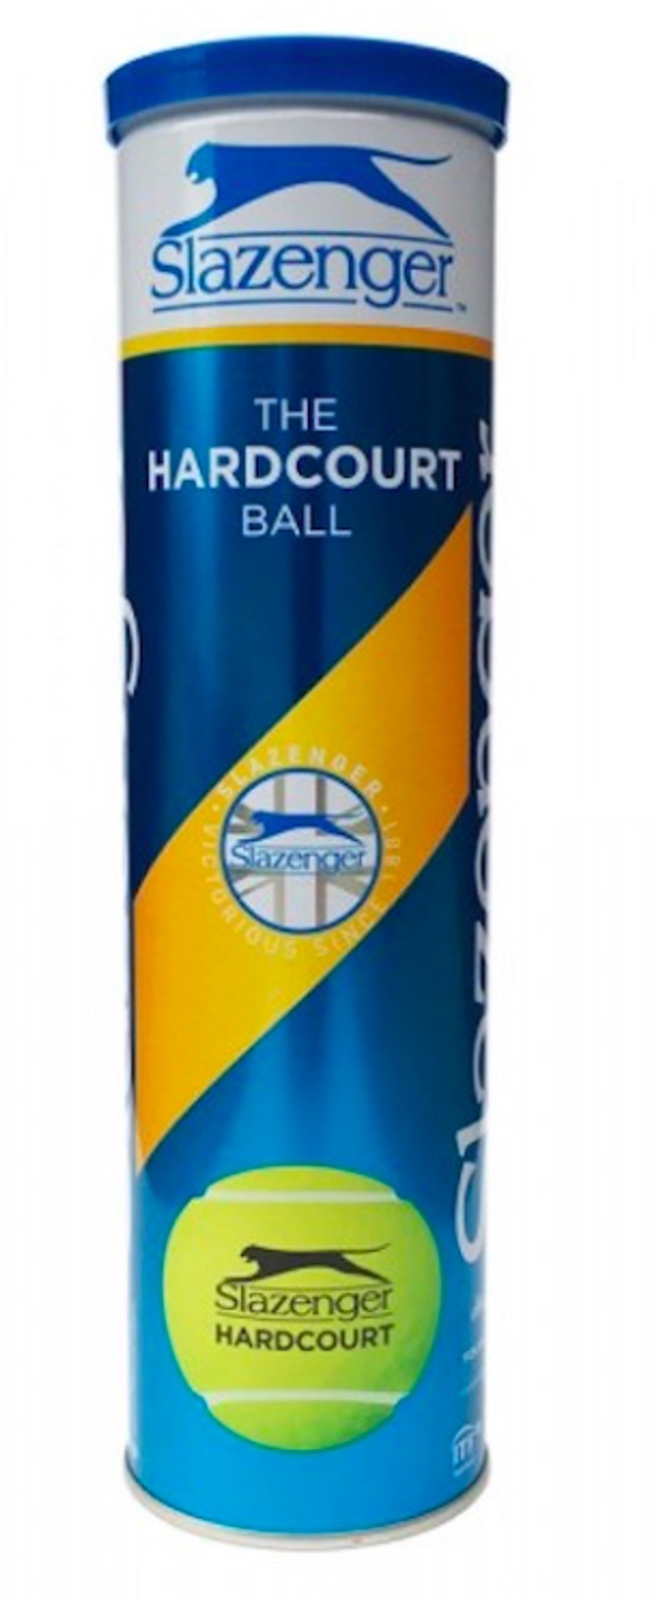 Slazenger Hardcourt 4 Ball Tennis Balls